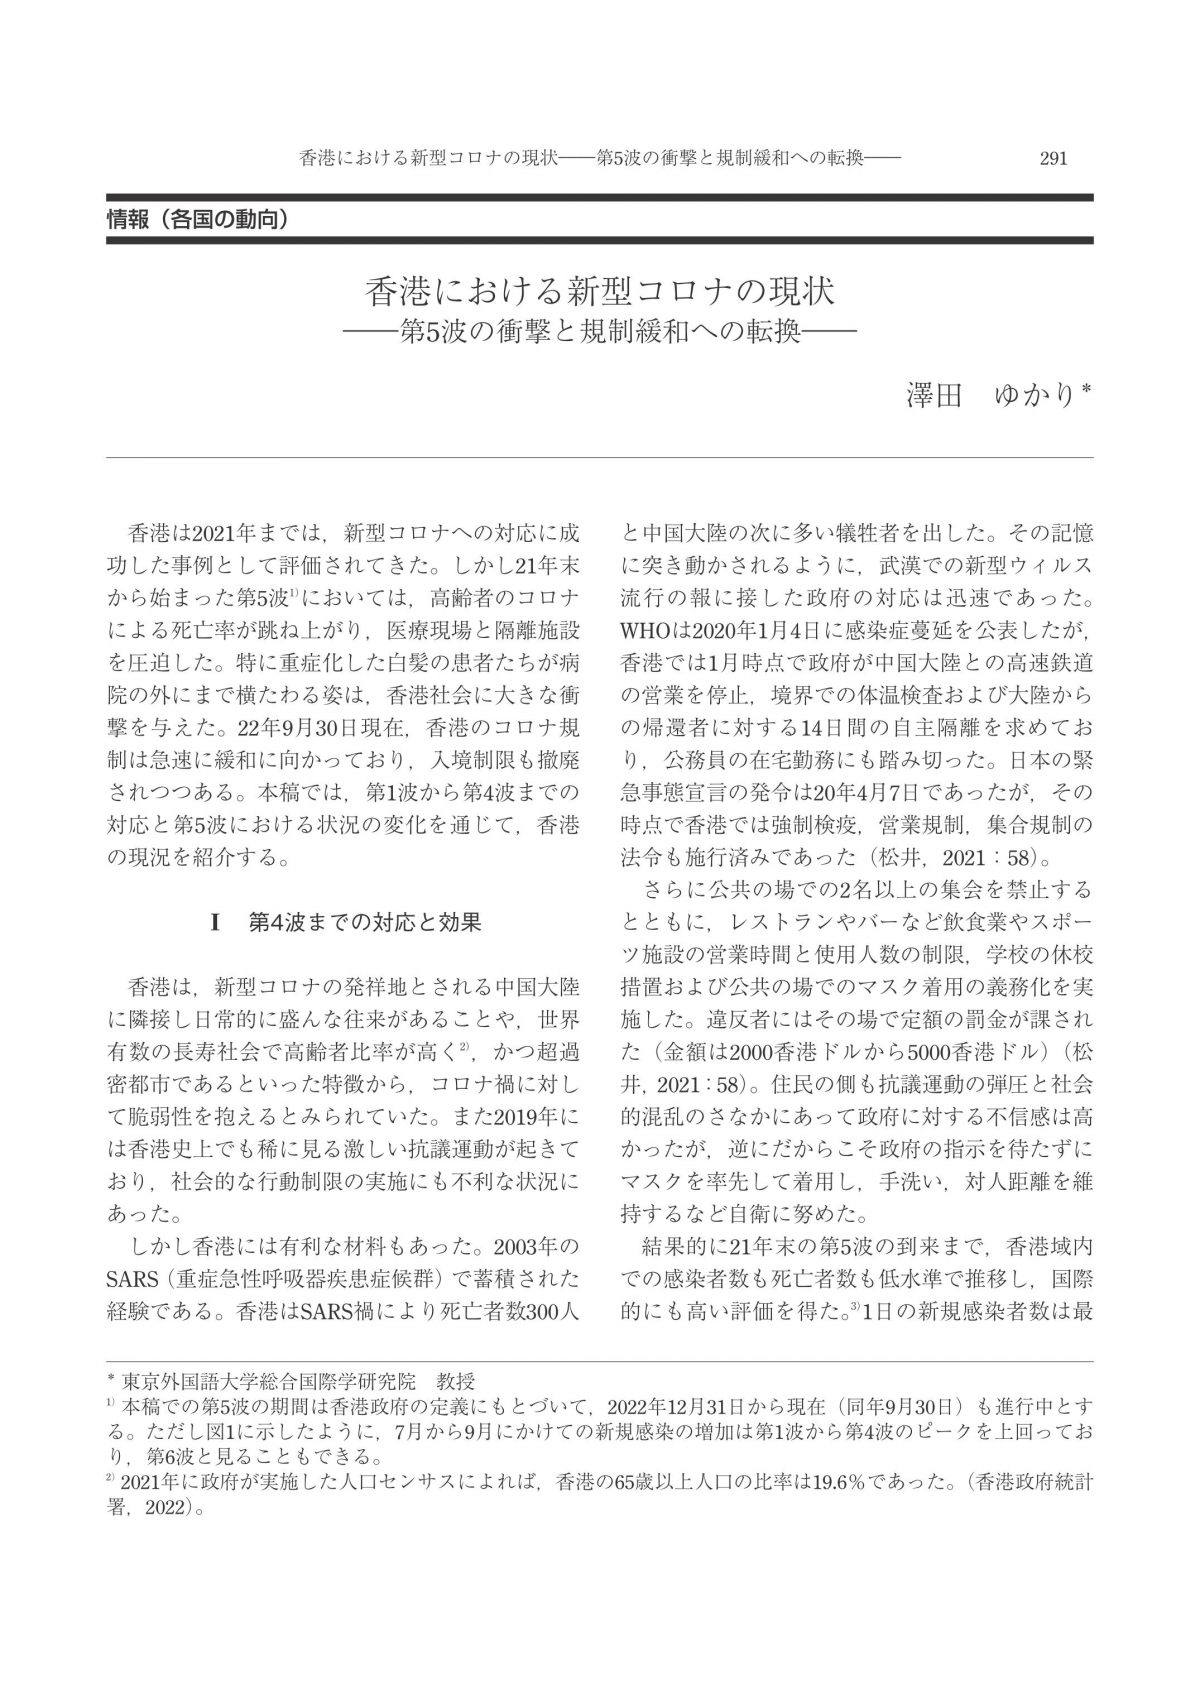 資料提供：香港における新型コロナの現状 ―第5波の衝撃と規制緩和への転換―